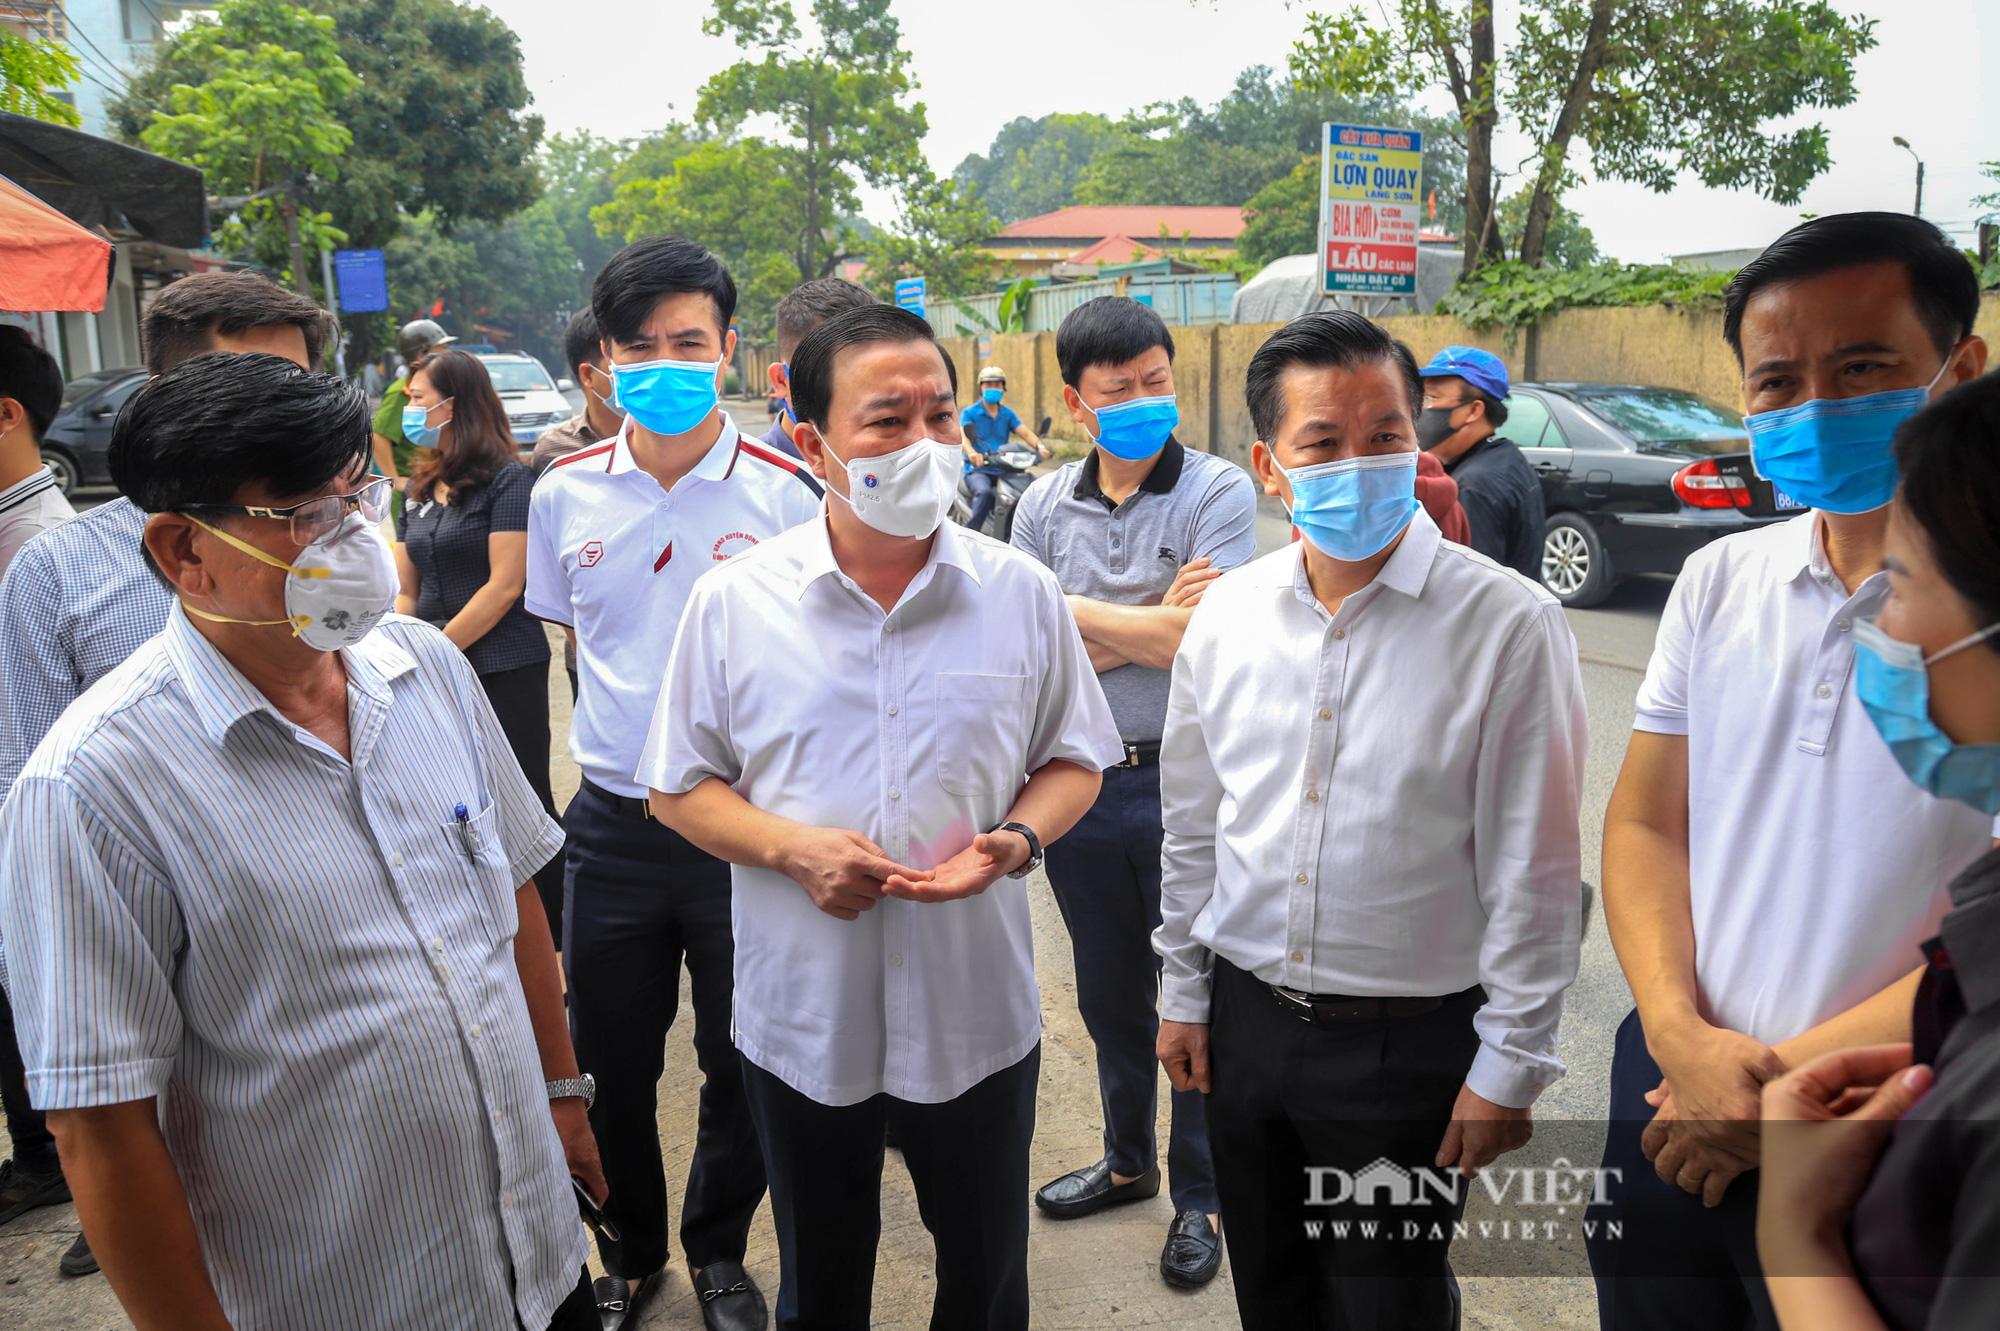 Hà Nội: Phó Chủ tịch TP thị sát khu cách ly nơi có ca nhiễm Covid 19 ở Đông Anh - Ảnh 5.